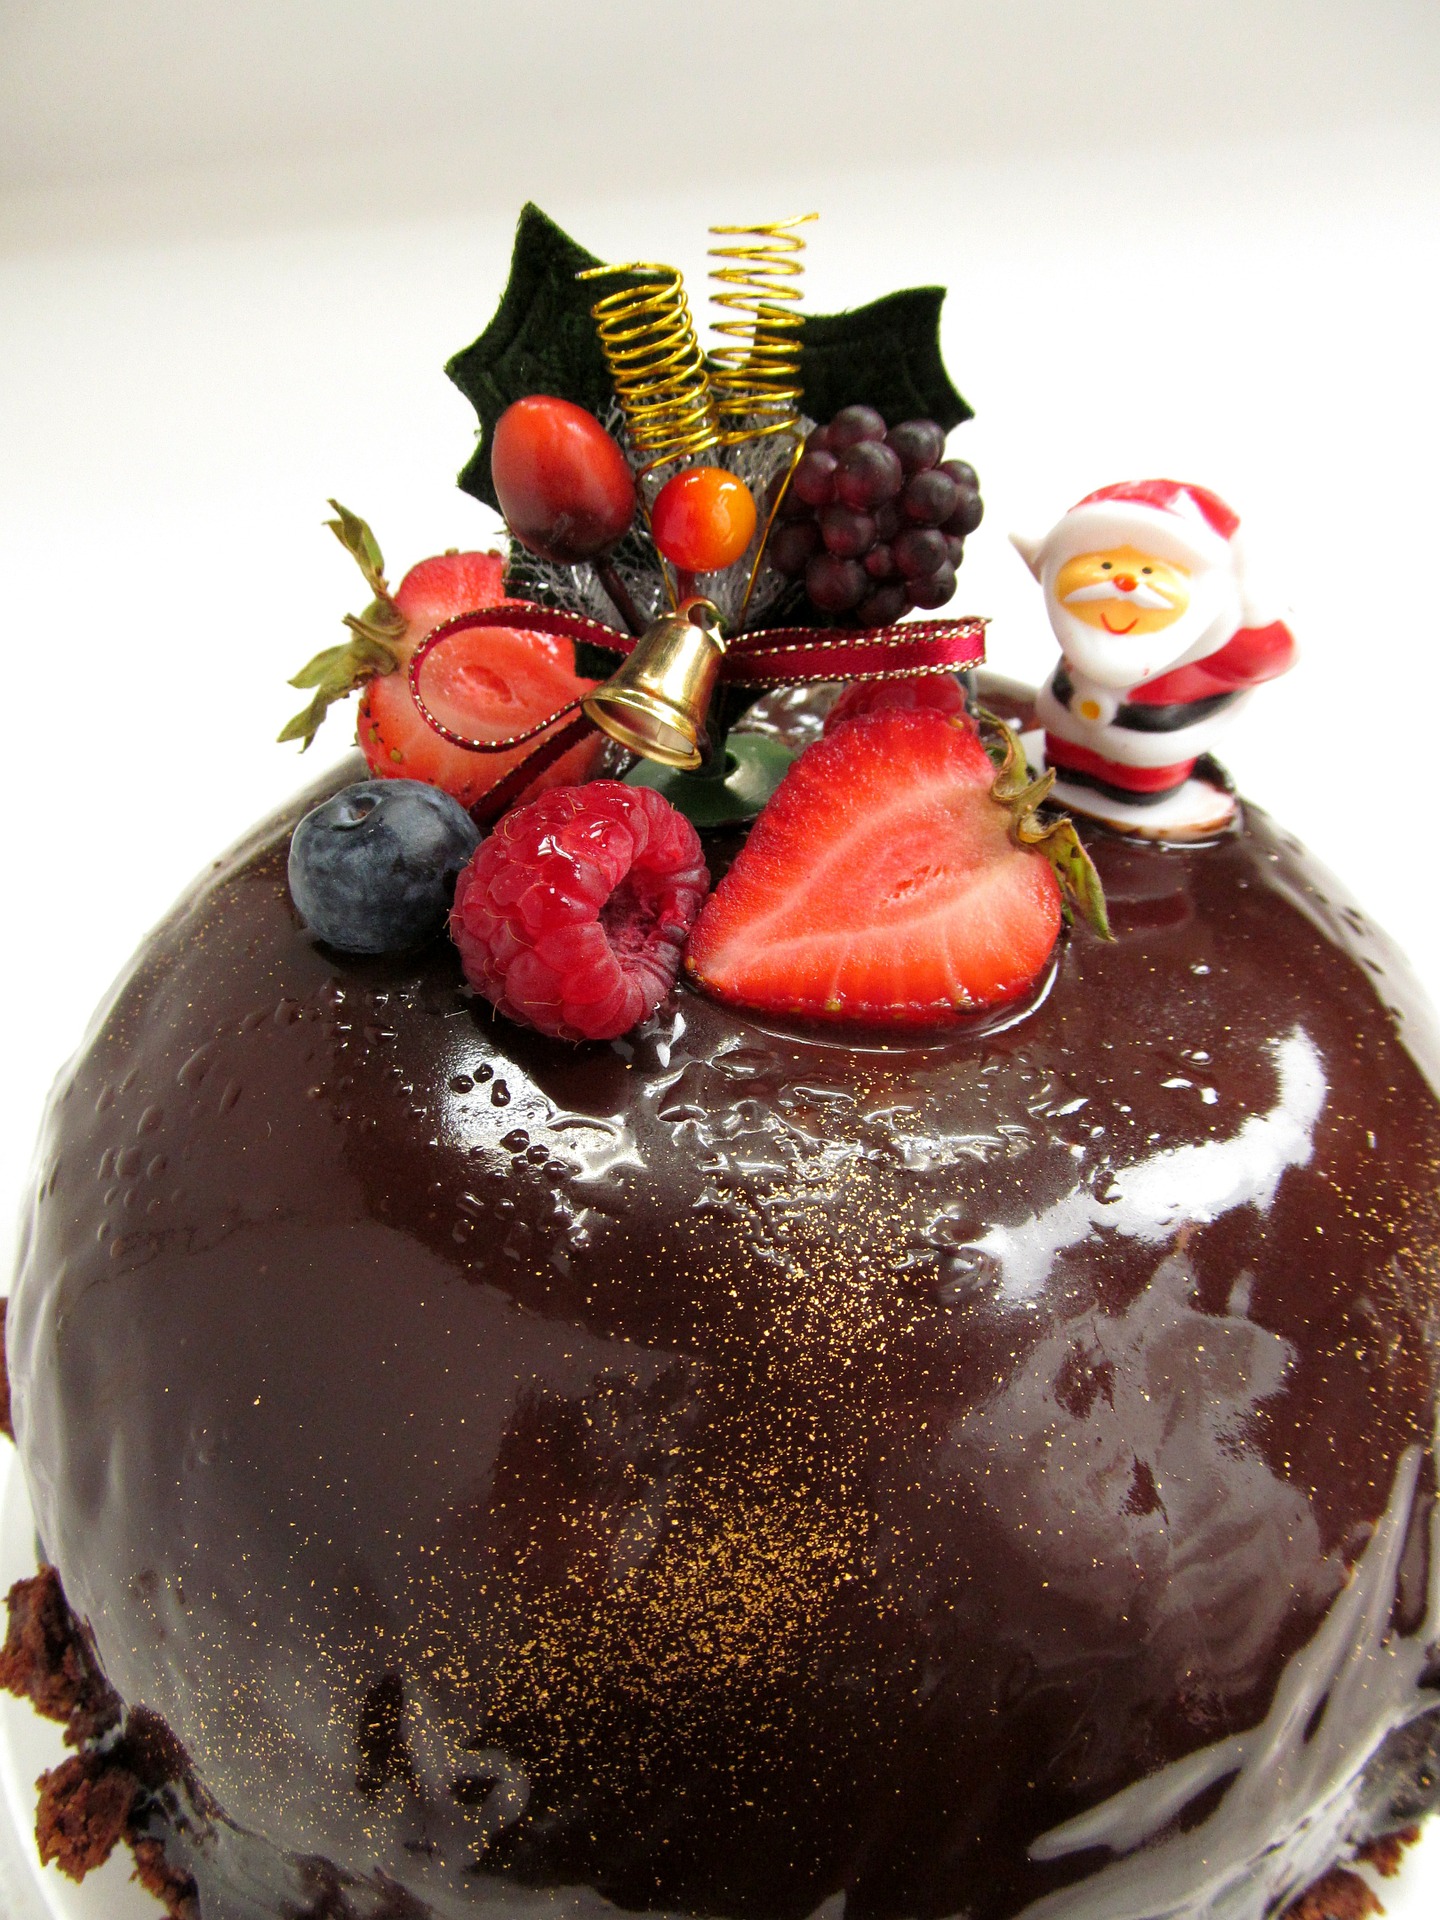 クリスマスケーキは手作りで デコレーションもセンス良くきめてみたい おひとりさま 楽しく暮らす日常料理 A